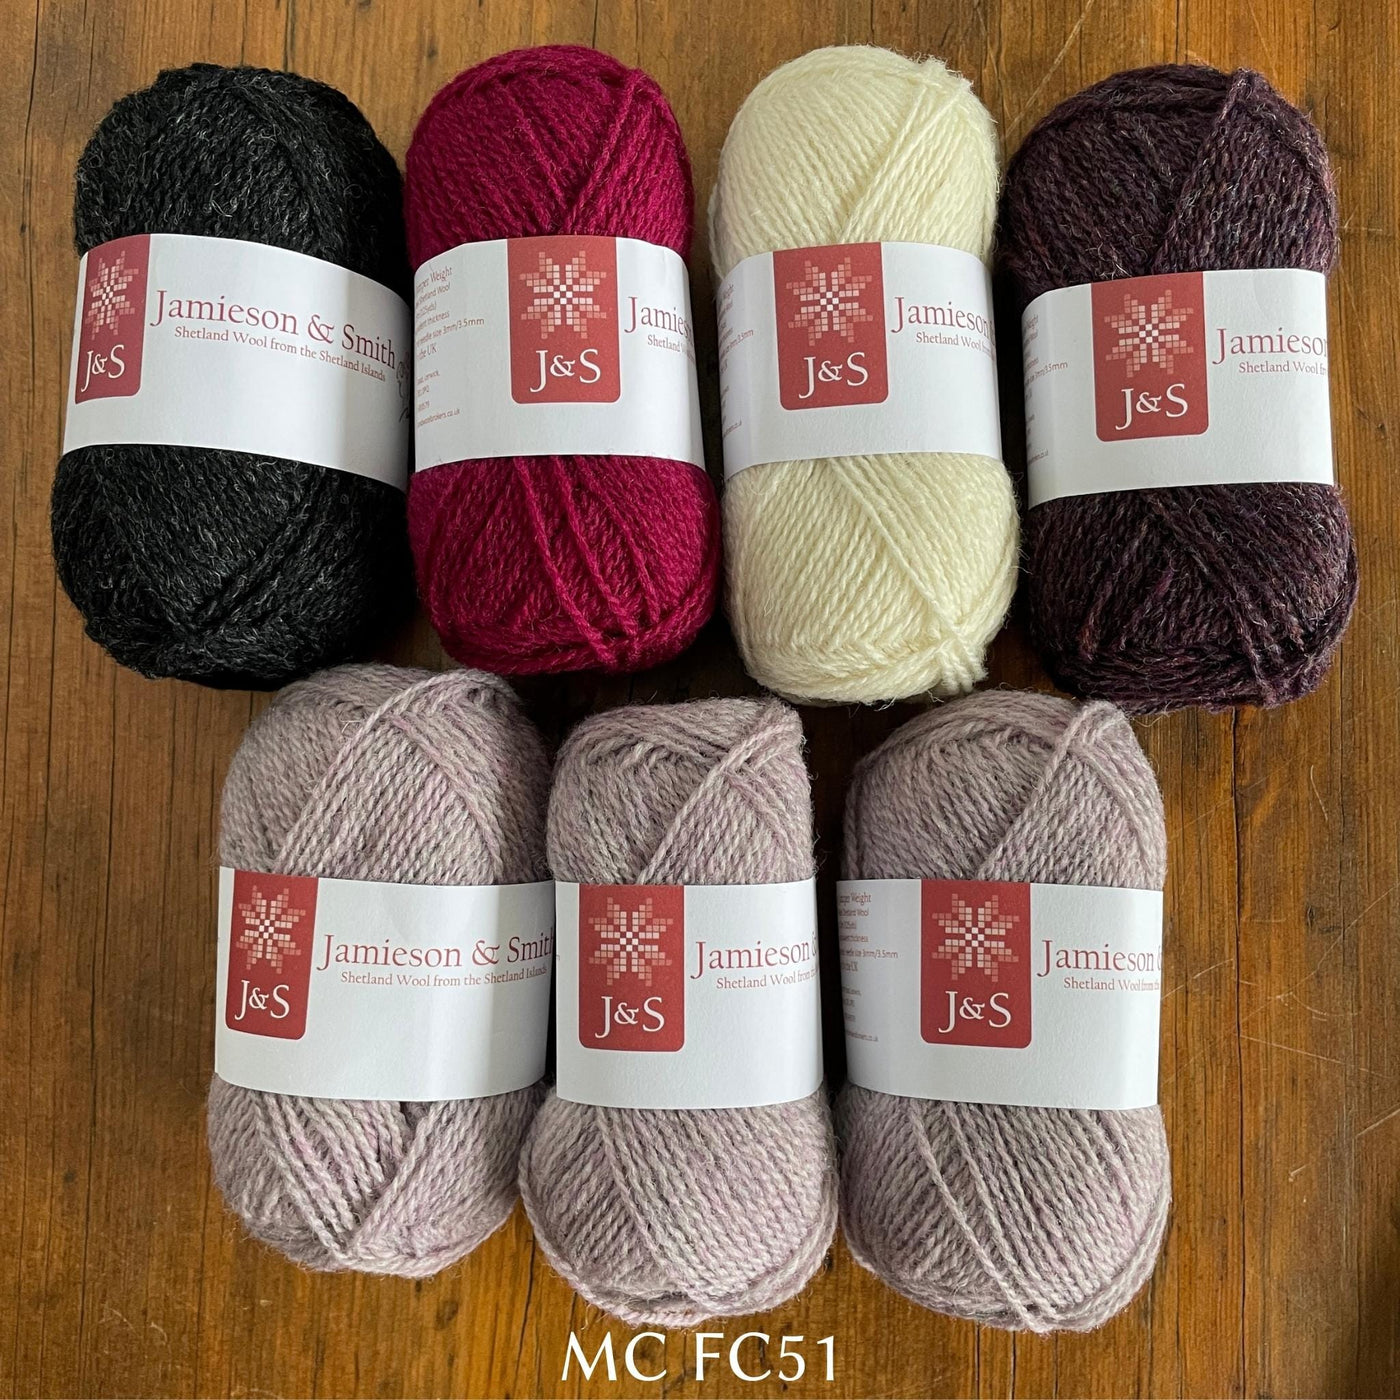 7 balls of J&S yarn in light cream/purple and dark grey, burgundy, red, and cream